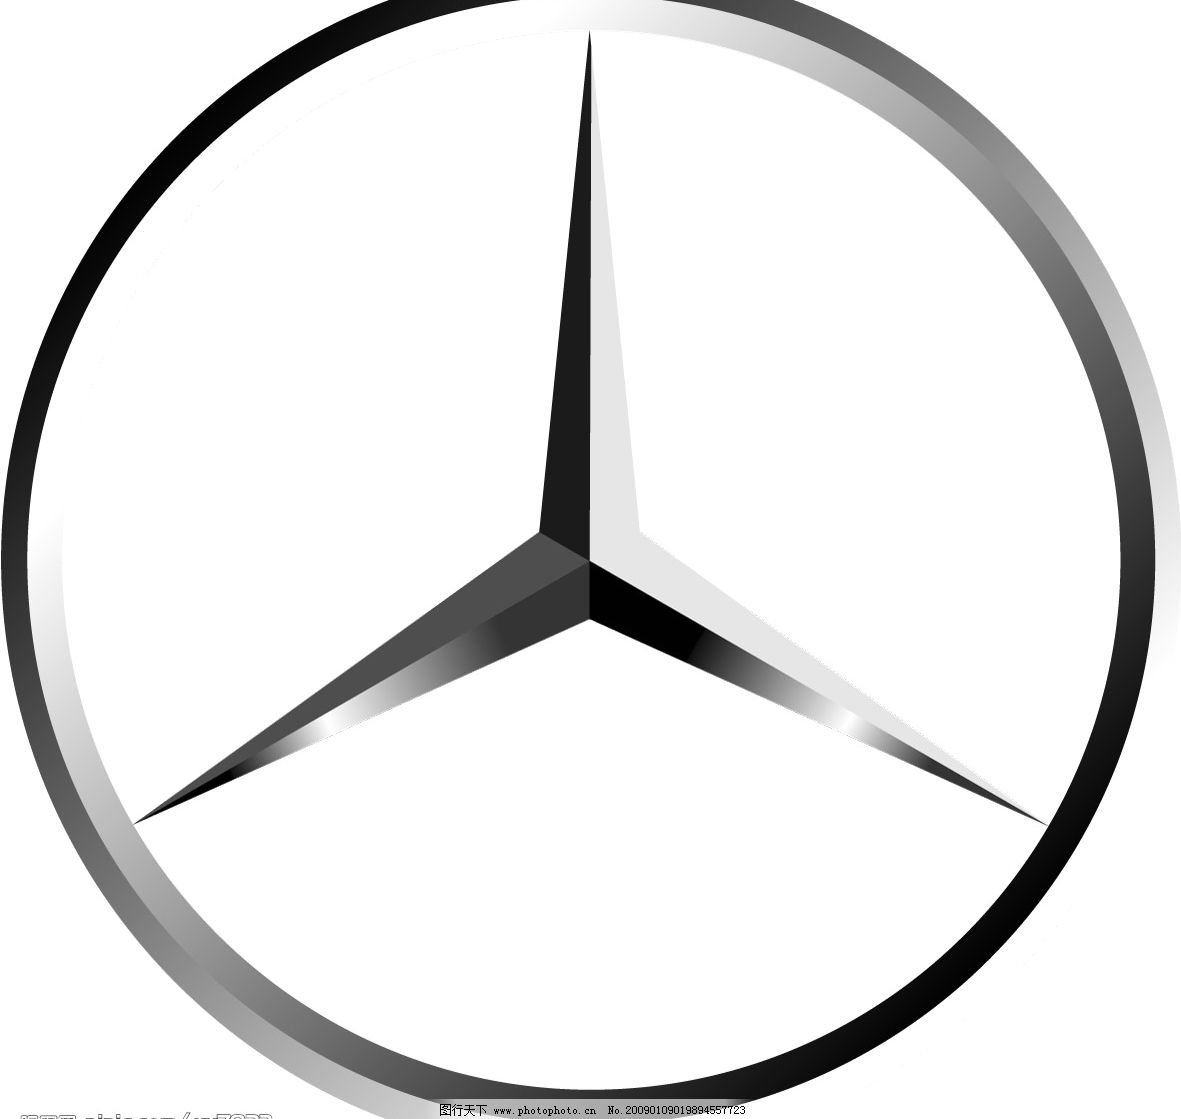 奔驰logo图片素材免费下载 - 觅知网